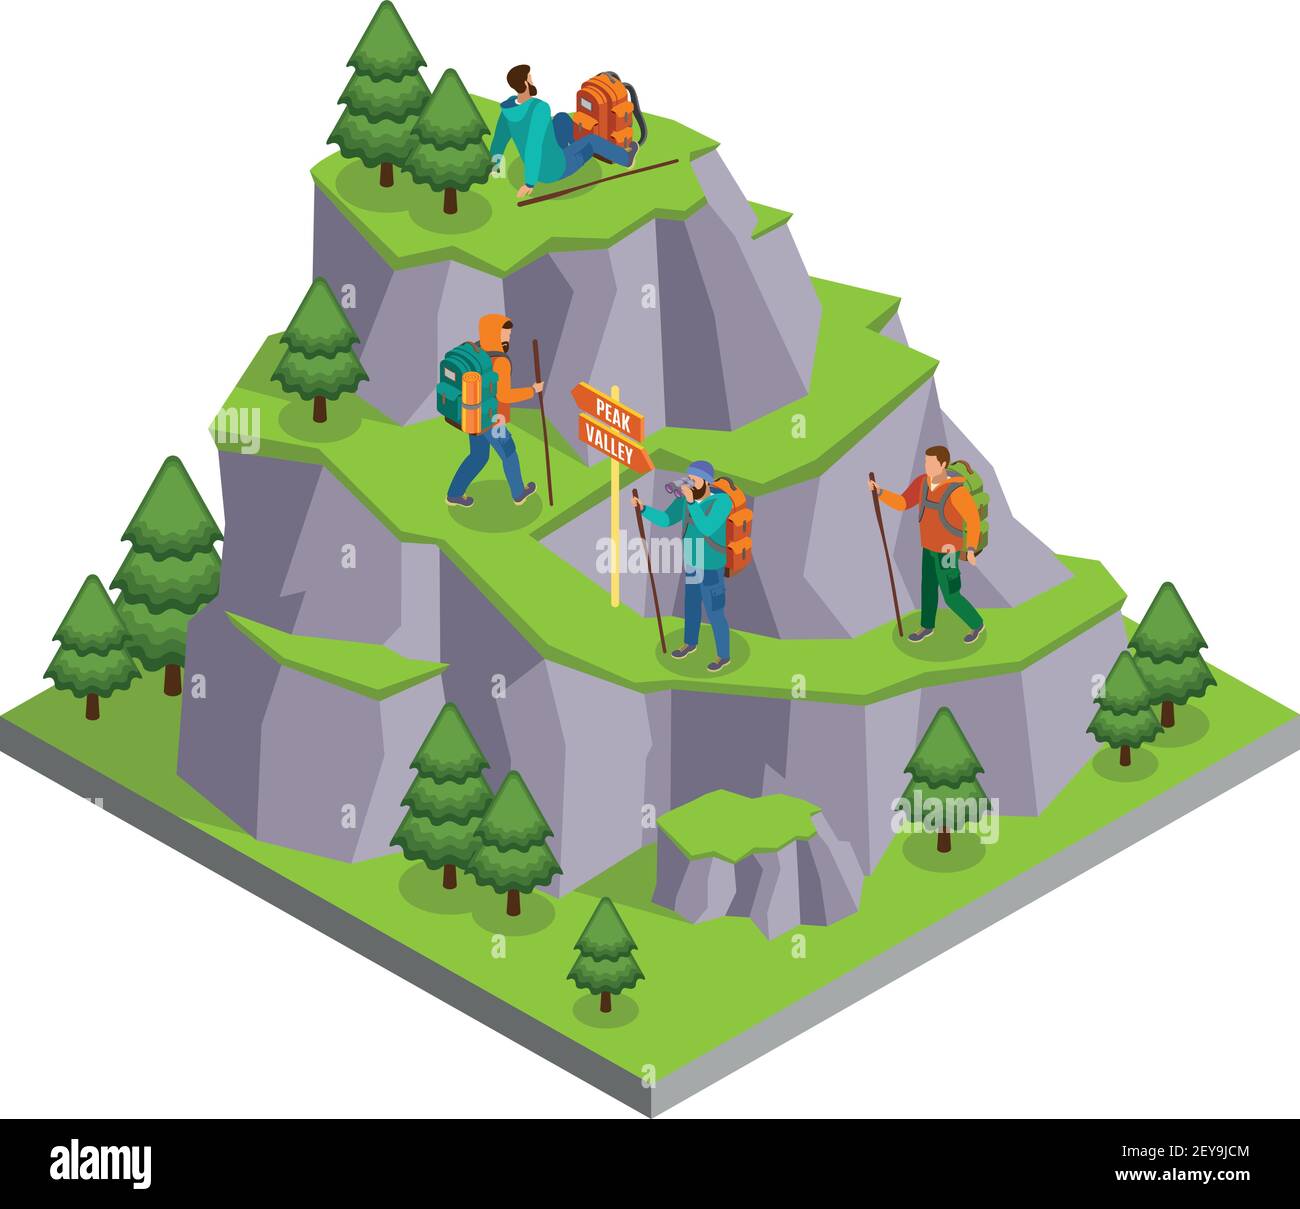 Wandern isometrische Komposition mit wilden Berg Panorama-Bild mit Wandern Pfade und menschliche Charaktere von Camper Vektor-Illustration Stock Vektor